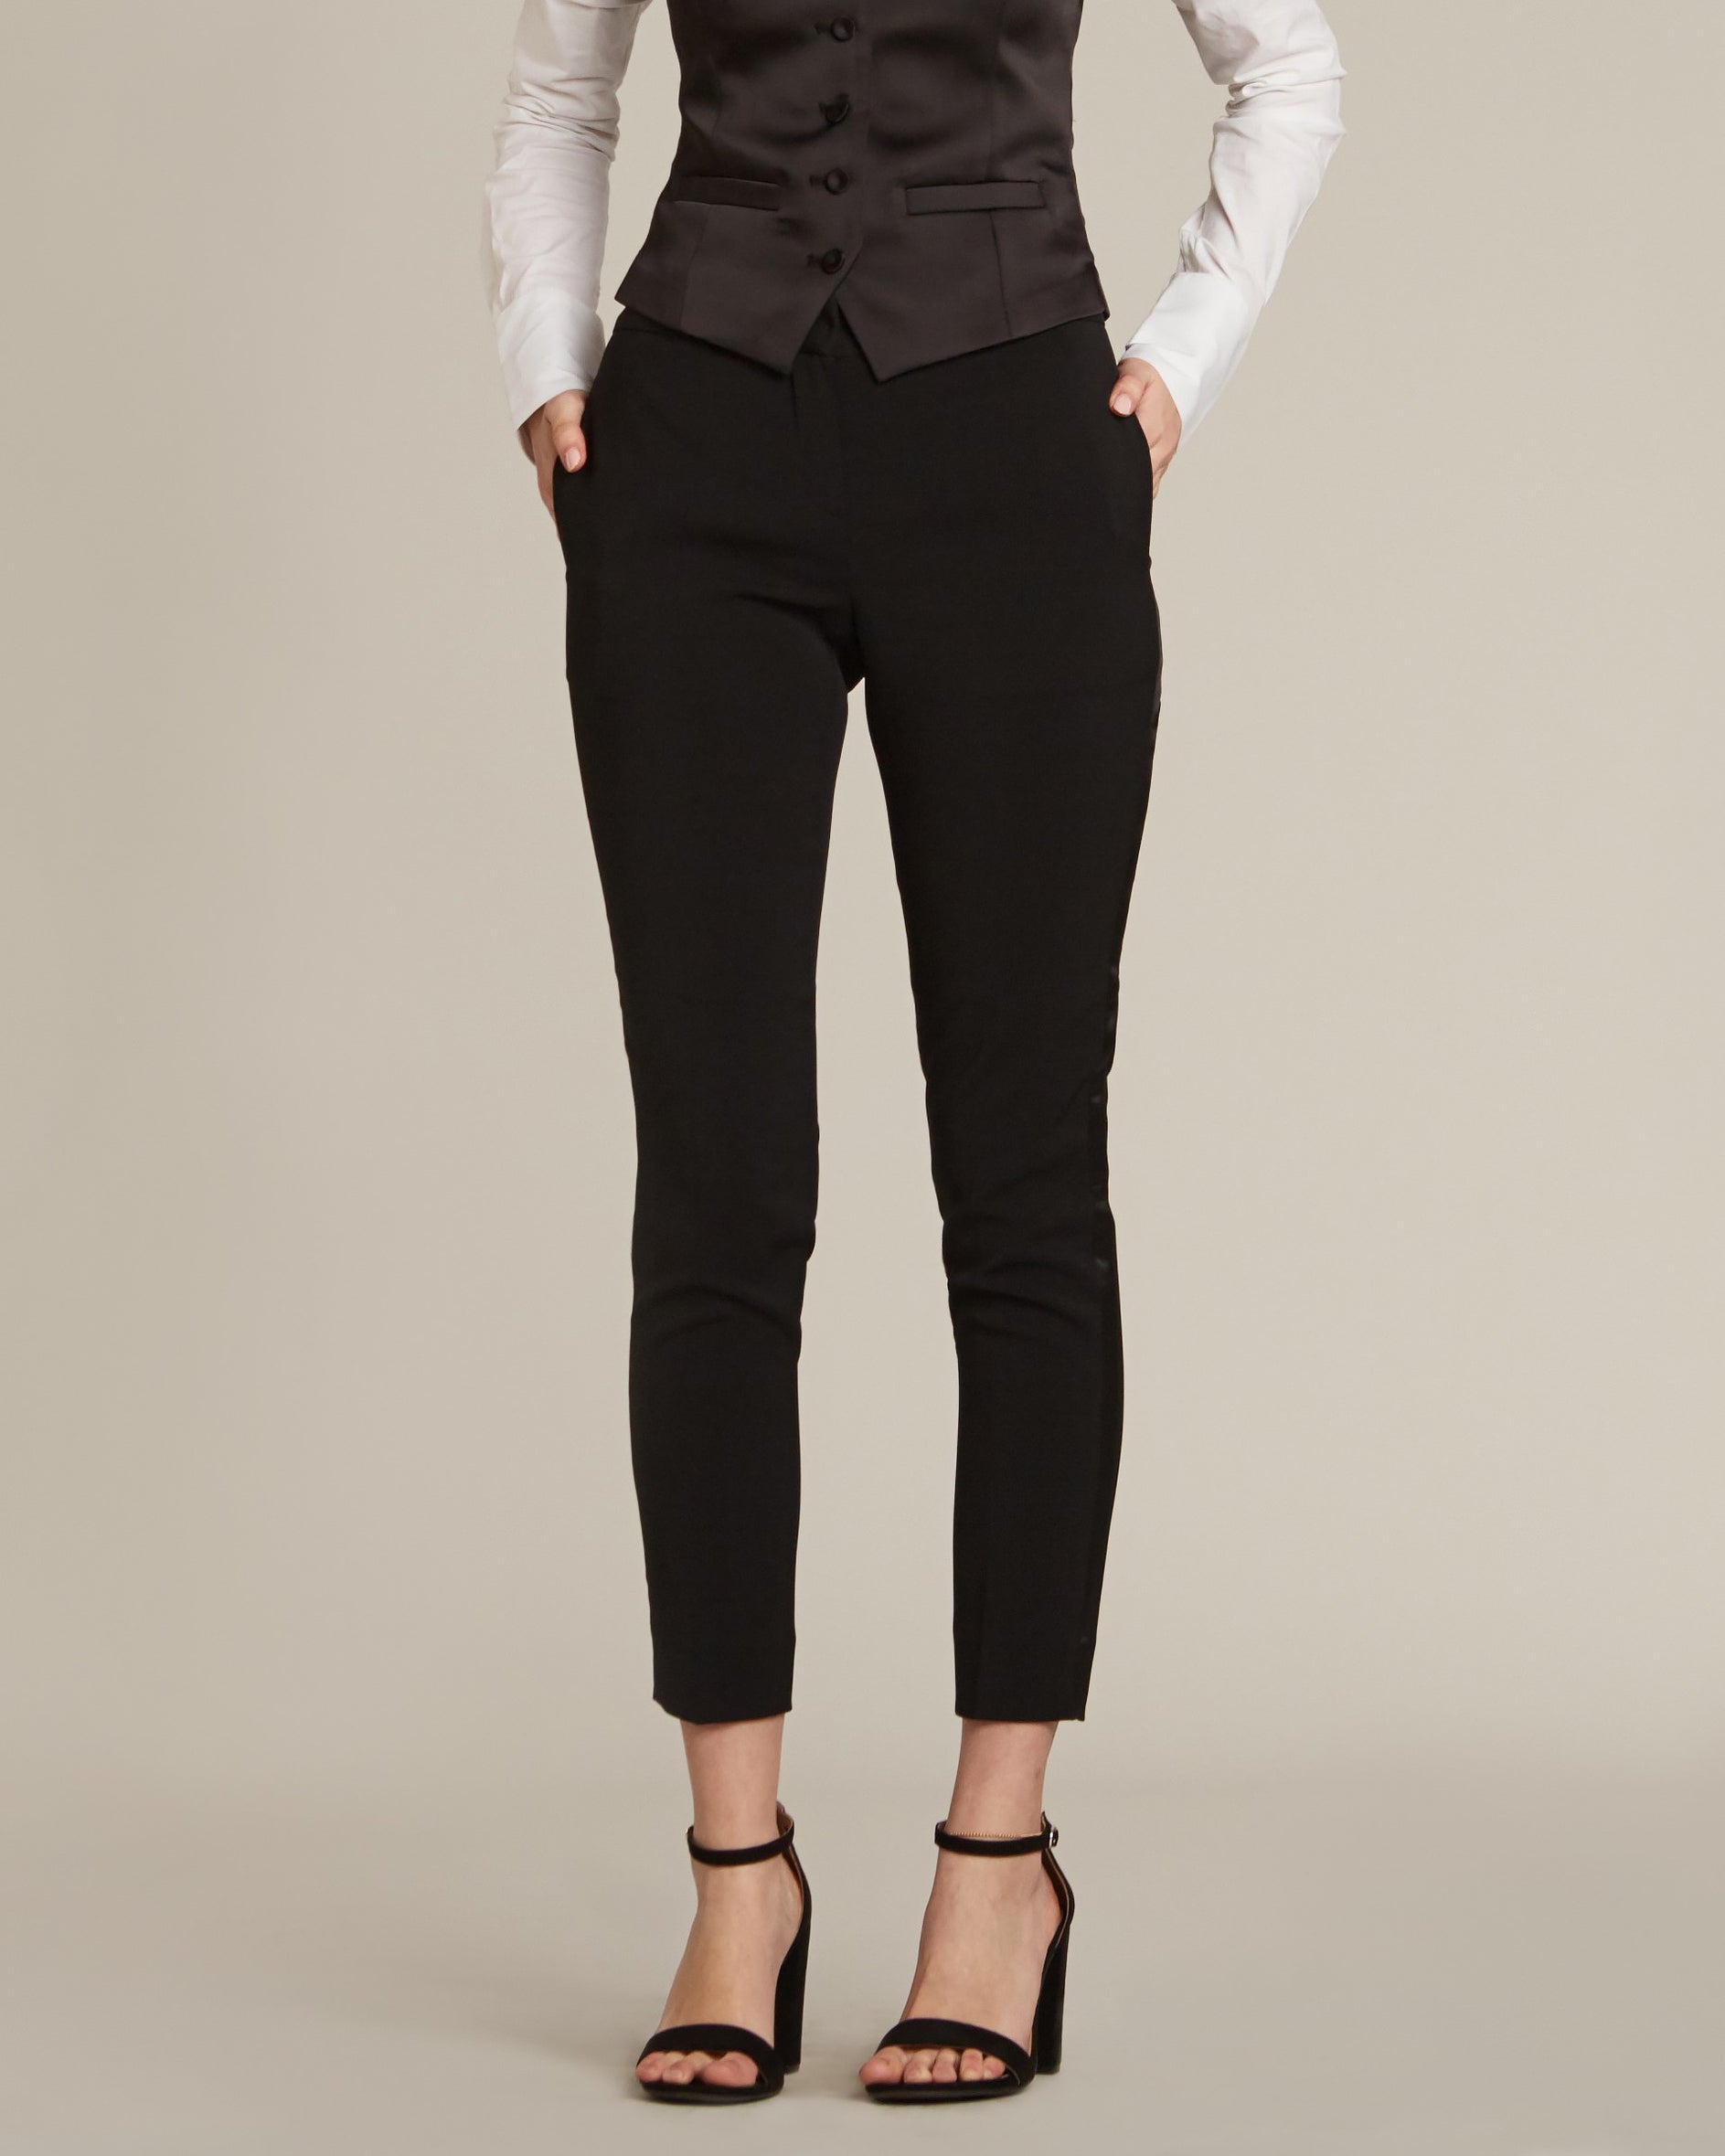 Women's Black Tuxedo Pants by SuitShop